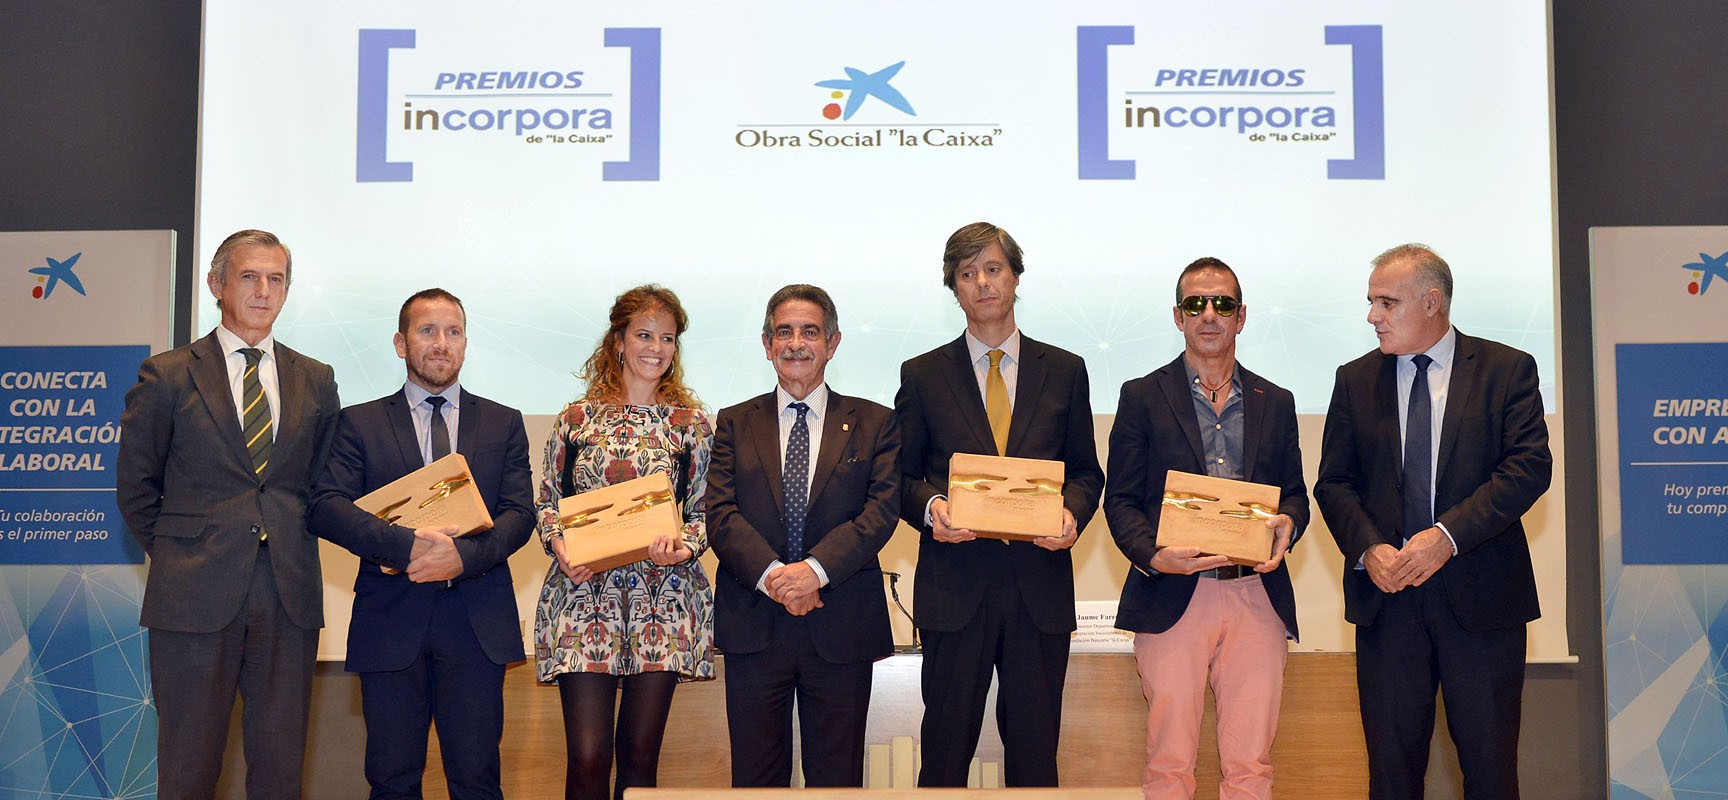 Aquaclym Limpiezas, Maflow Spain Automotive, Centro Hospitalario Padre Menni y Onda Solidaria reciben los Premios Incorpora de la Obra Social ”la Caixa”